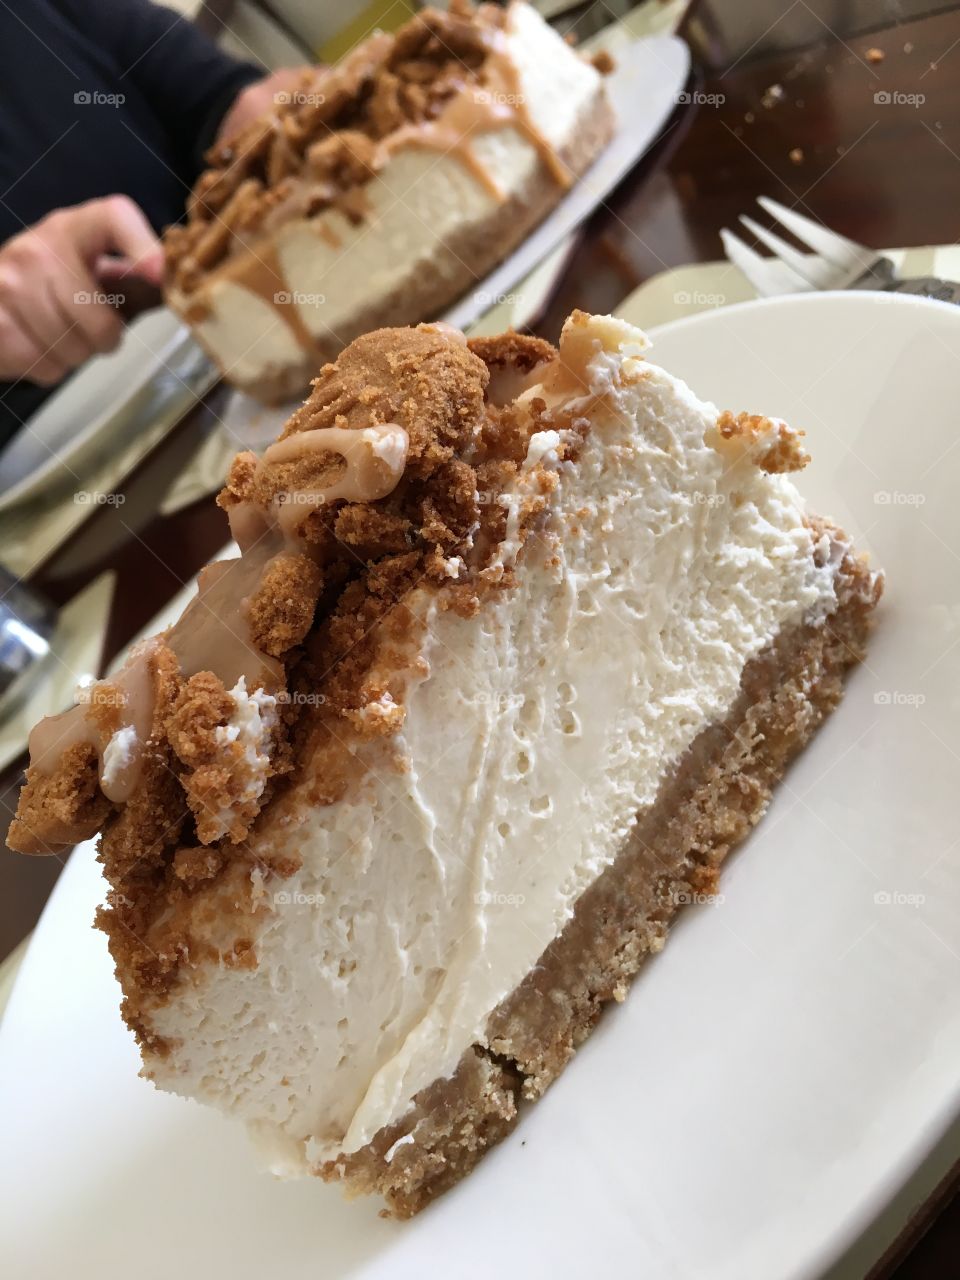 Sharing a divine cheesecake dessert. 